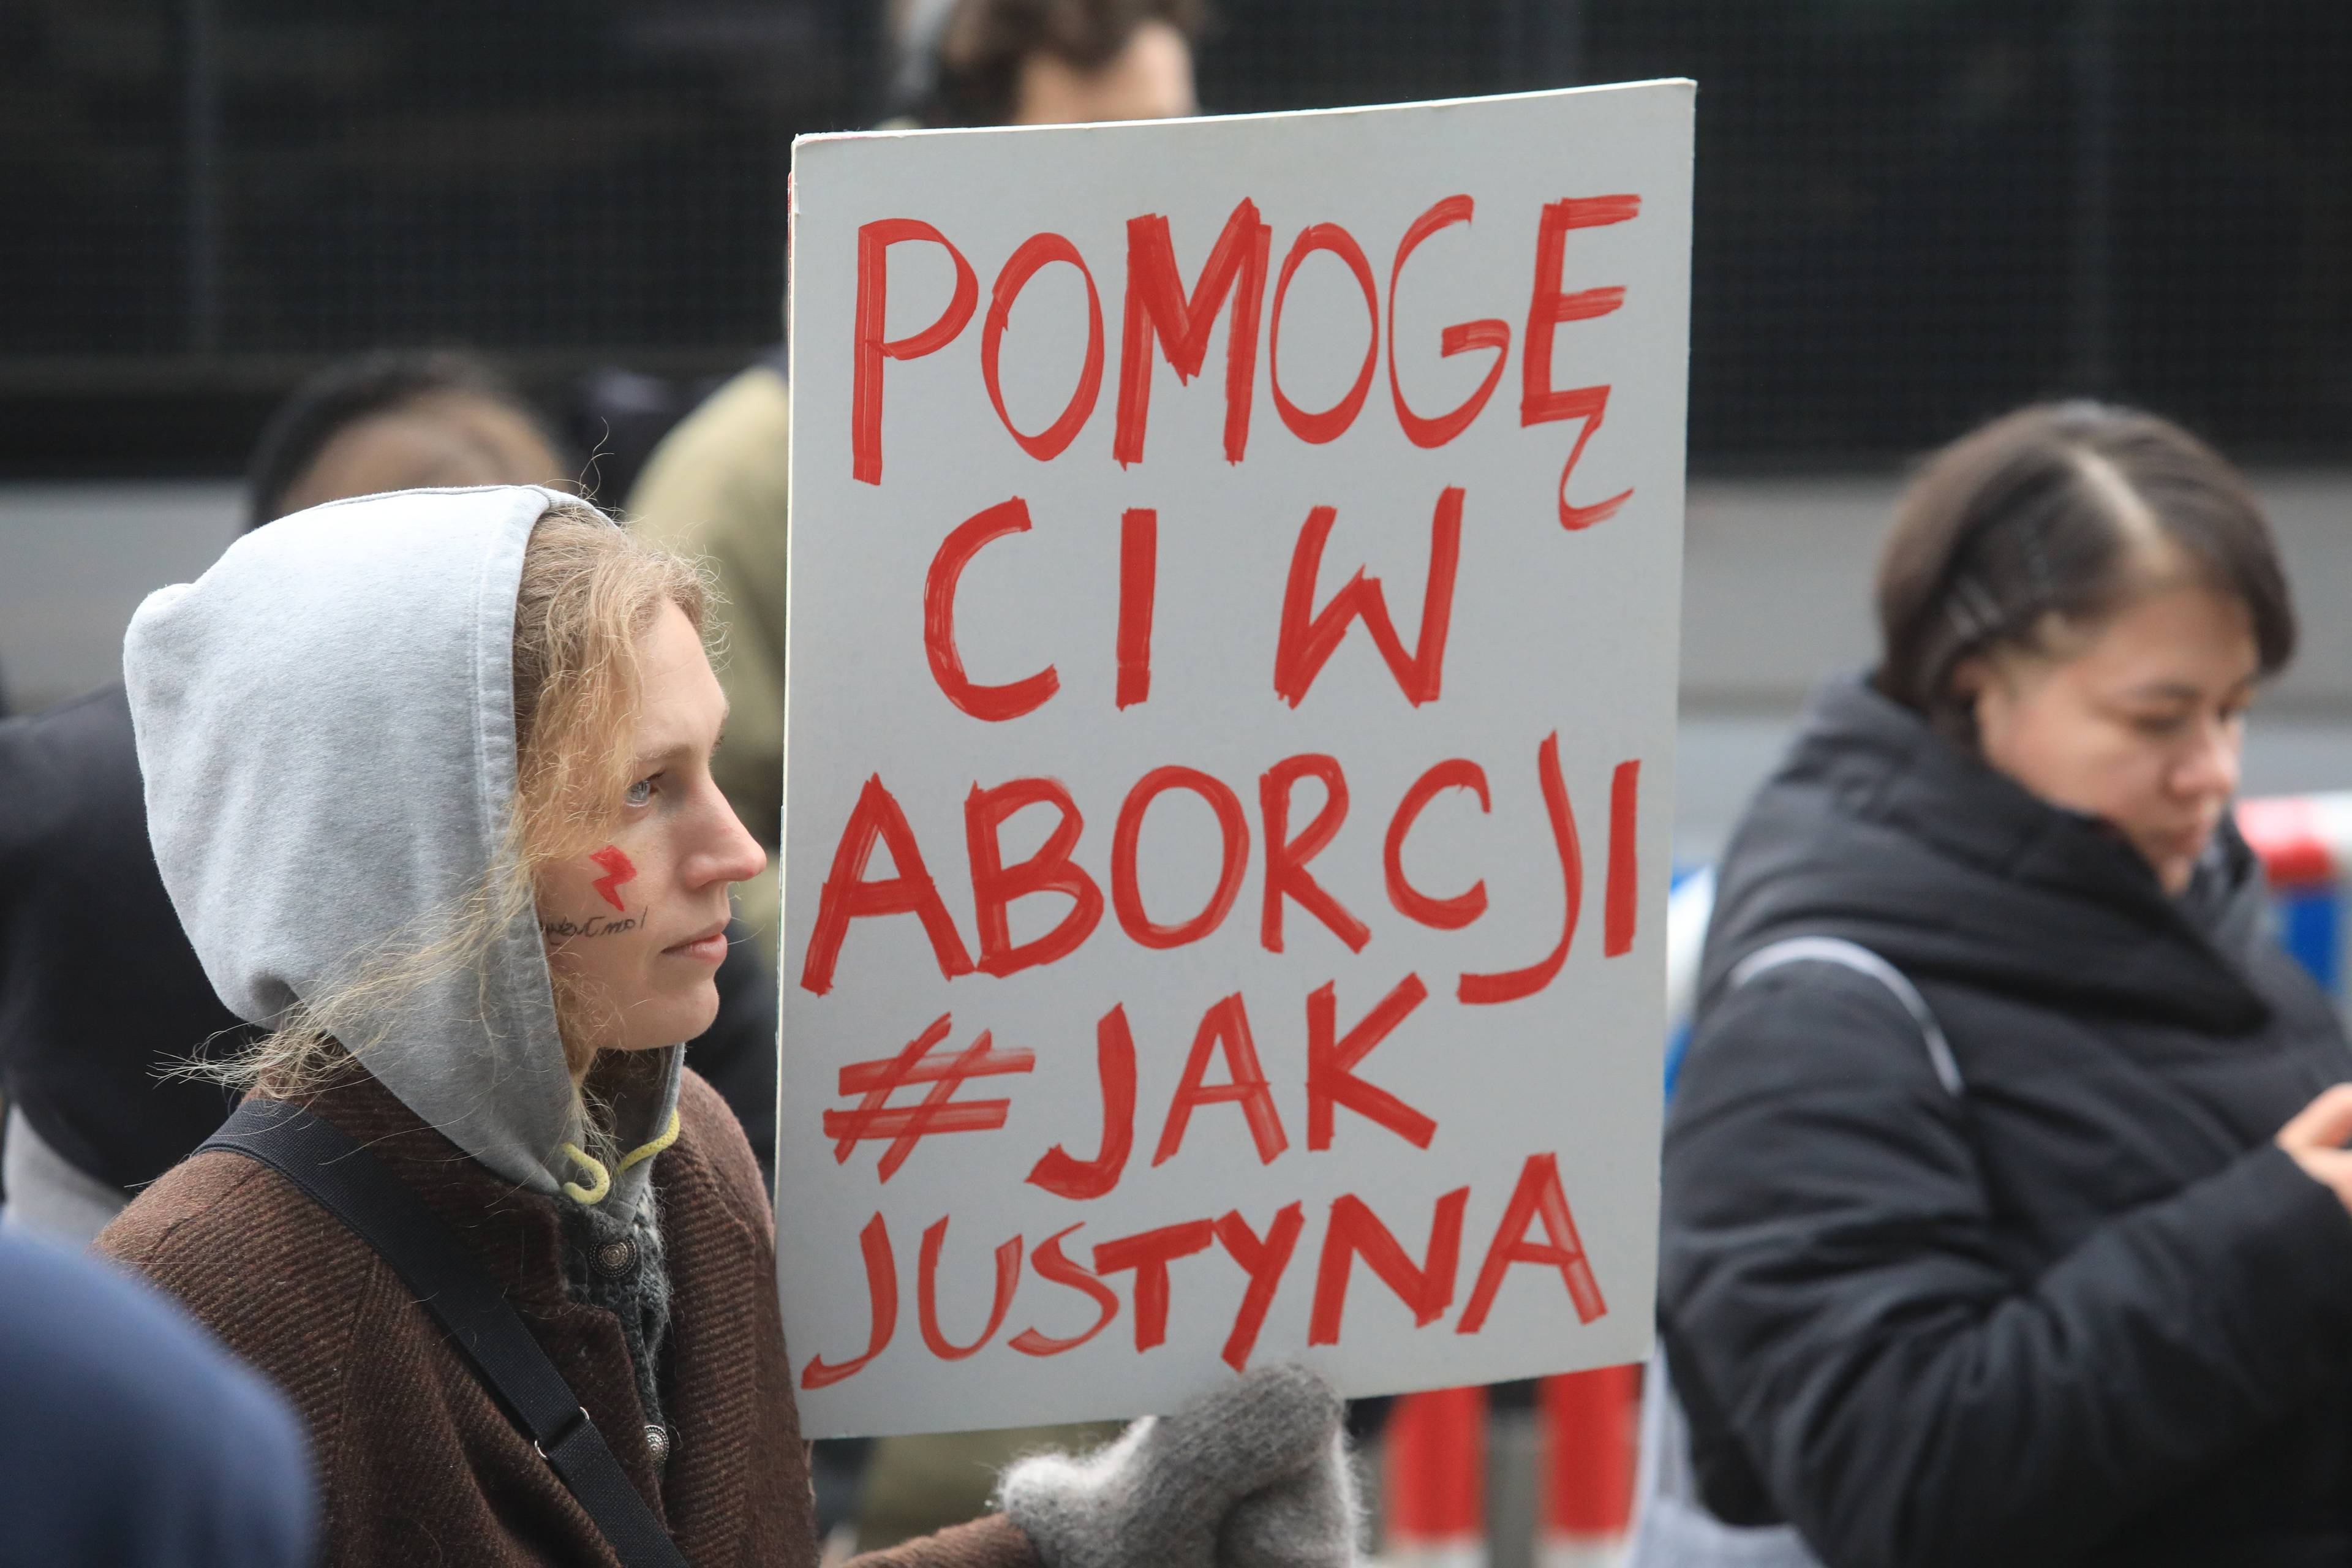 Demonstracja poparcia dla Aborcyjnego Dream Teamu - uczestniczka protestu trzyma karton z hasłem Pomogę ci w aborcji jak Justyna